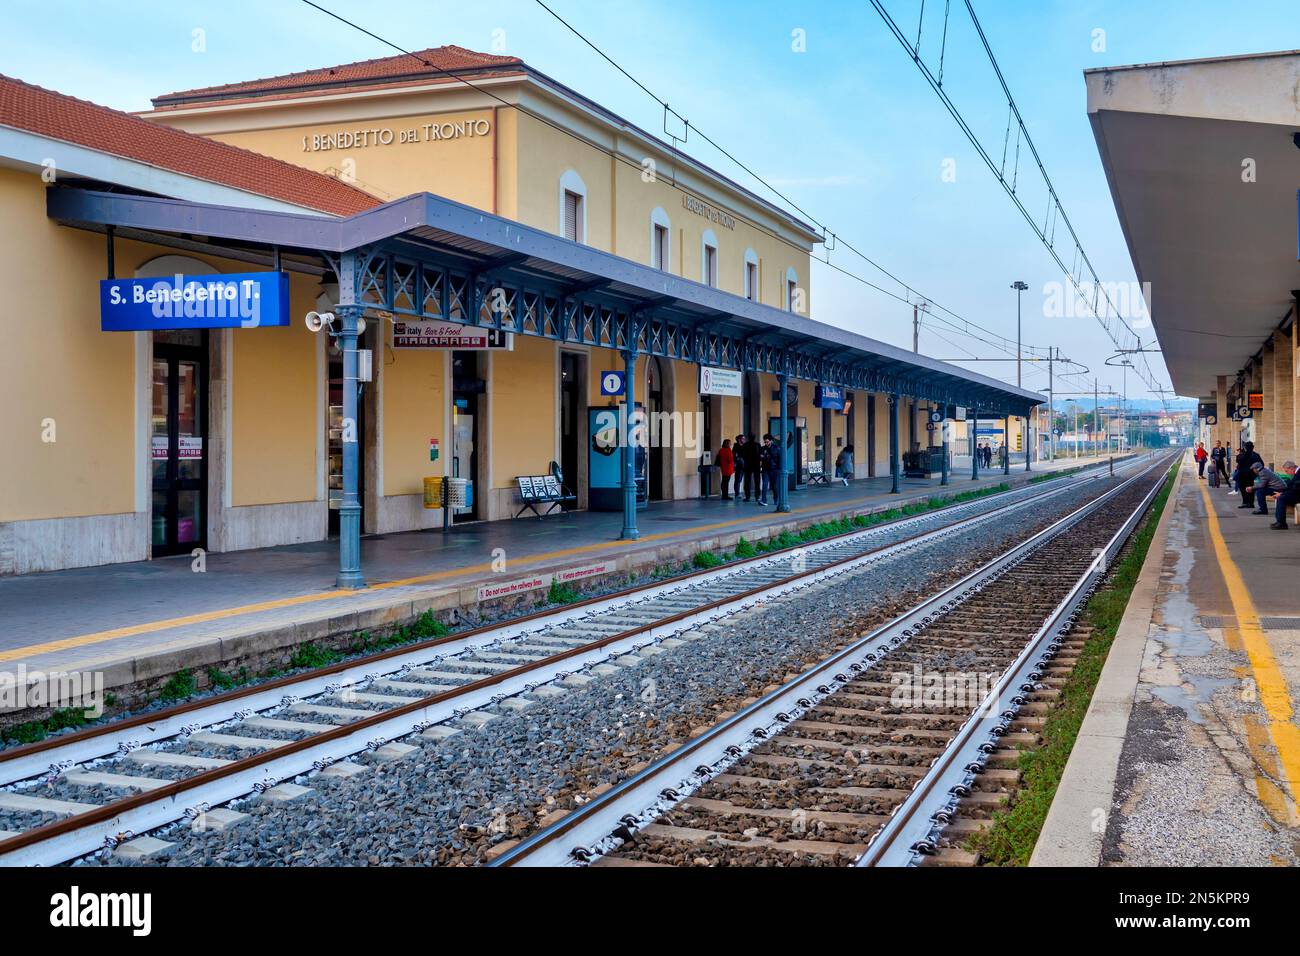 La stazione di San Benedetto del Tronto è una stazione ferroviaria situata sulla ferrovia Adriatica, sul tratto Ancona-Pescara. Foto Stock